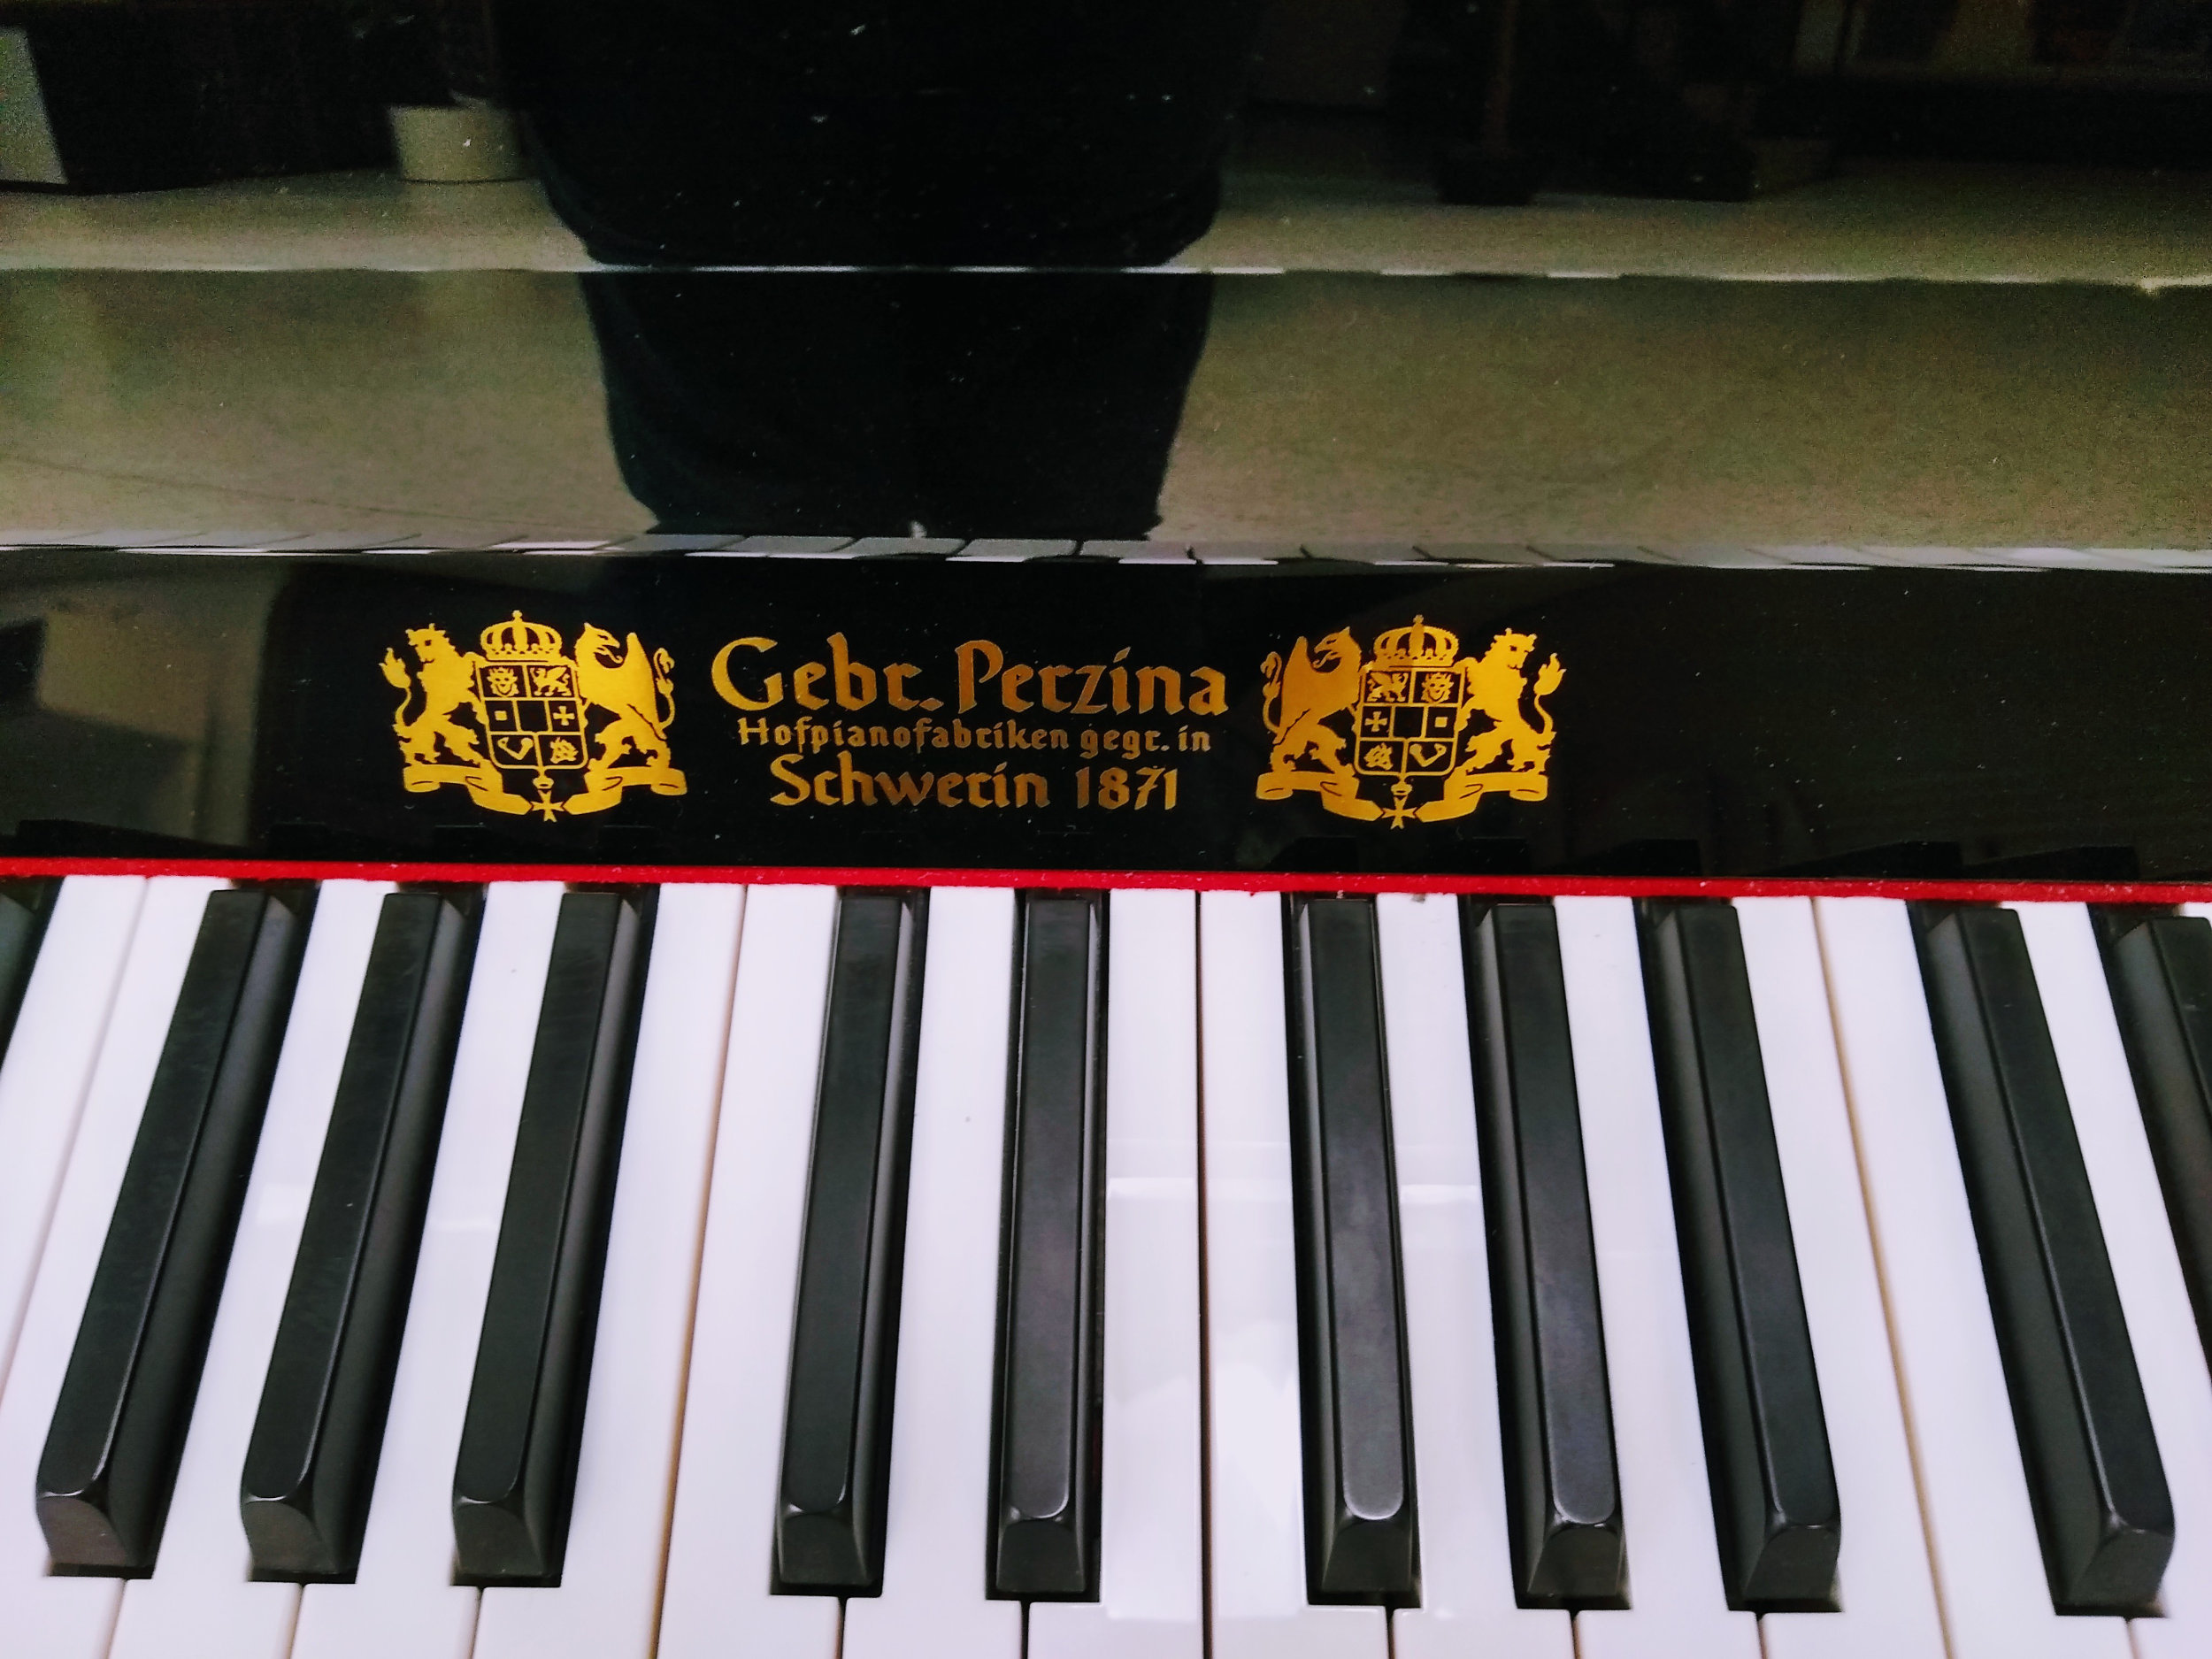 Gebr.Perzina GP122 Upright Piano - Black Polish